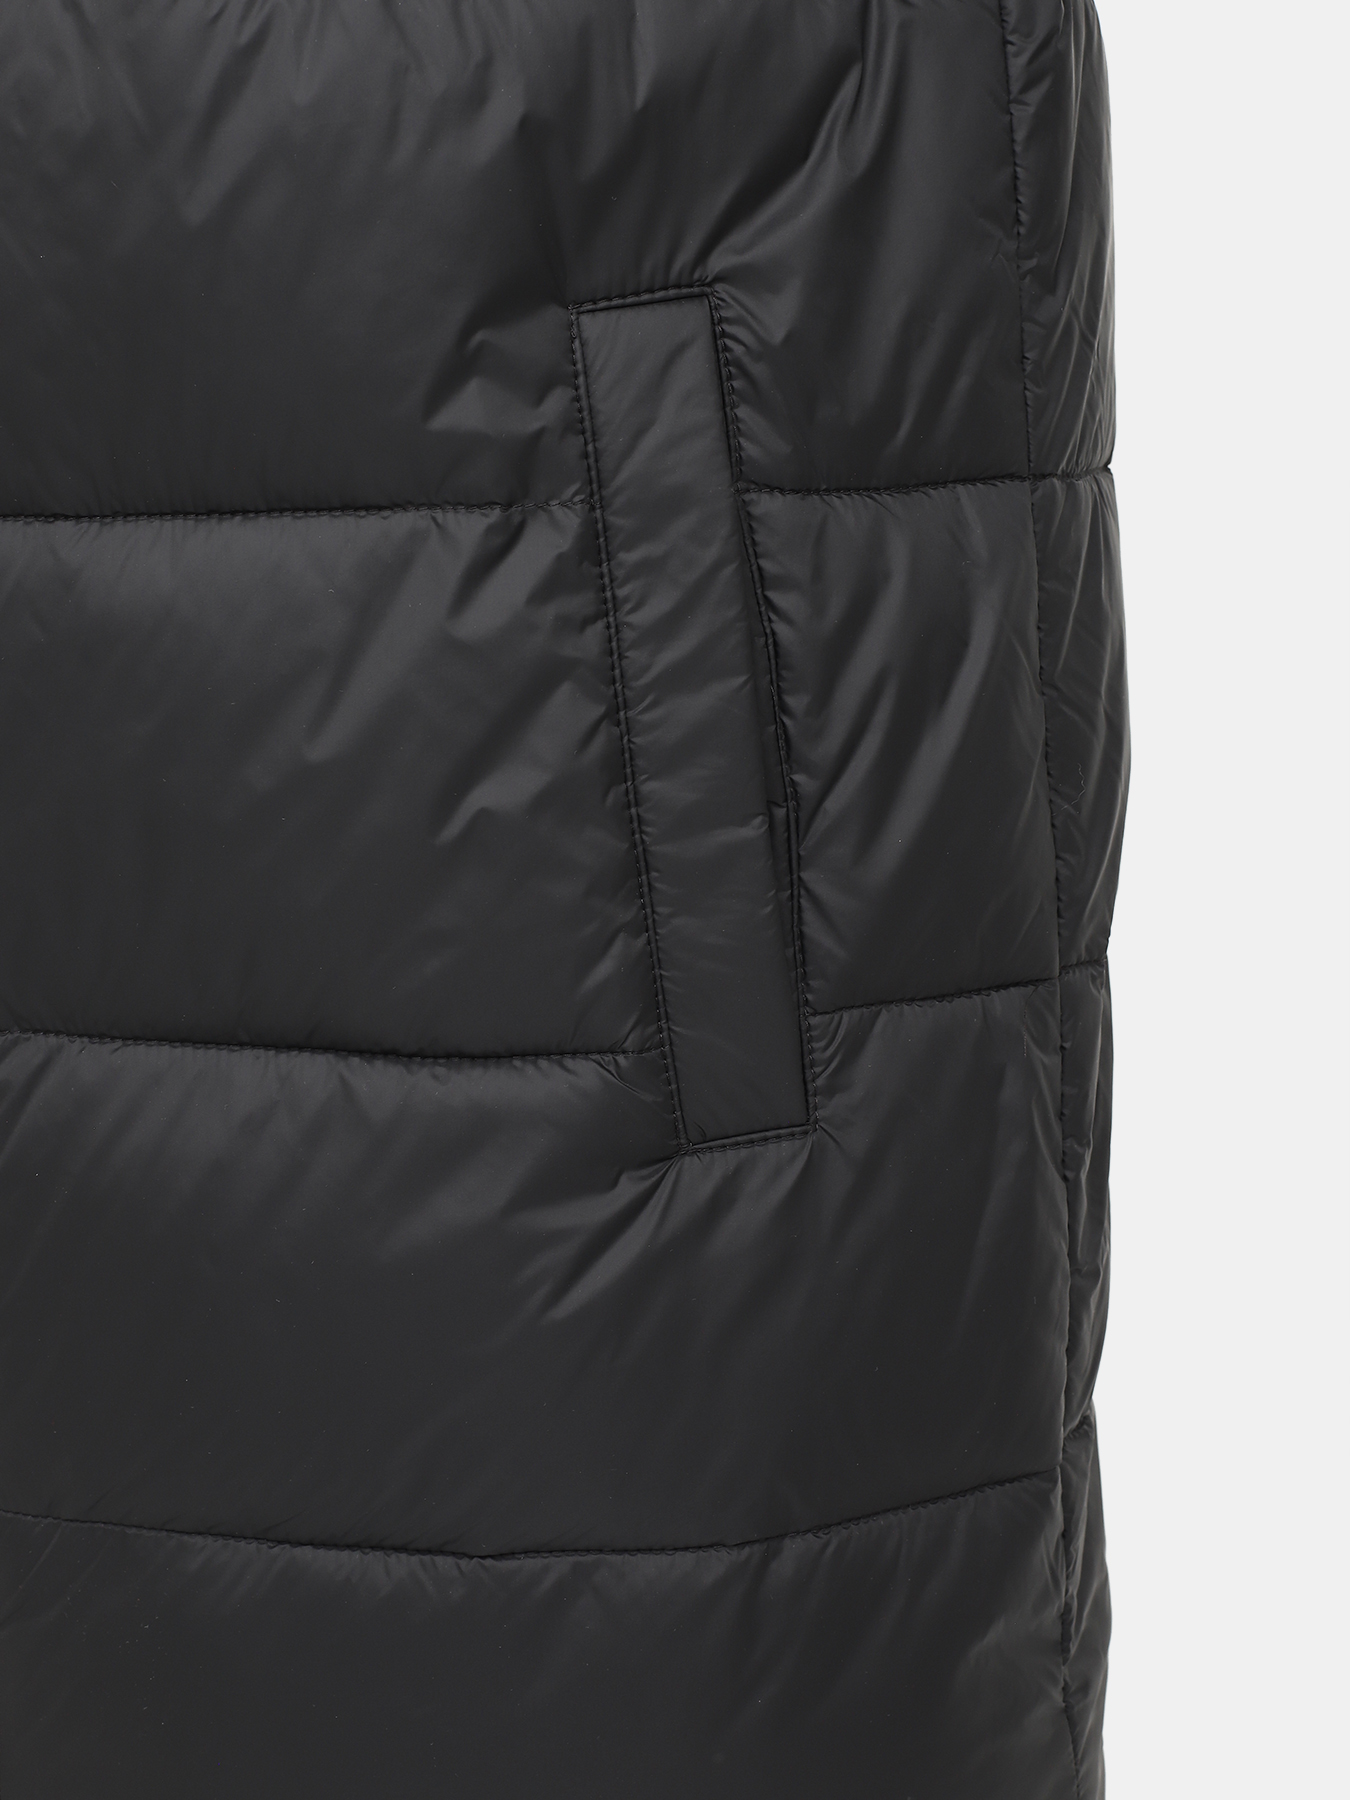 Удлиненная куртка Mati HUGO 426043-044, цвет черный, размер 50-52 - фото 2